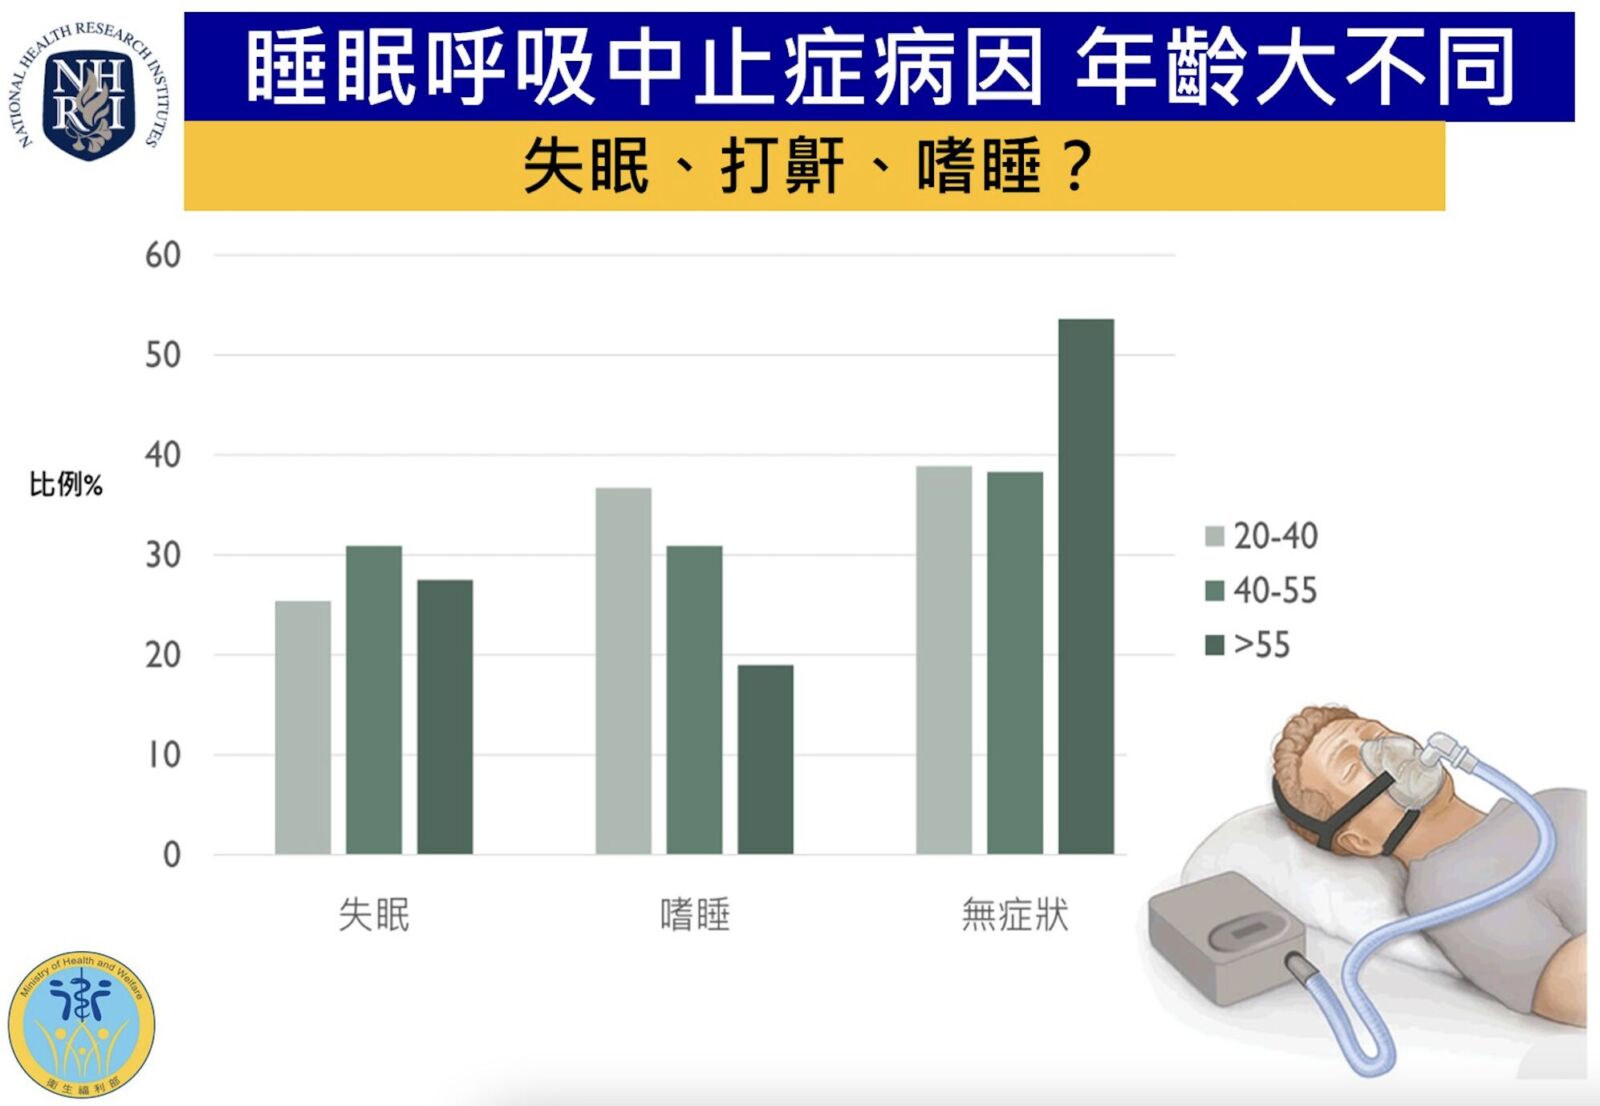 睡眠呼吸中止症一定嗜睡、打鼾？ 研究驚曝台灣老人集中「兩表現」常誤判 11